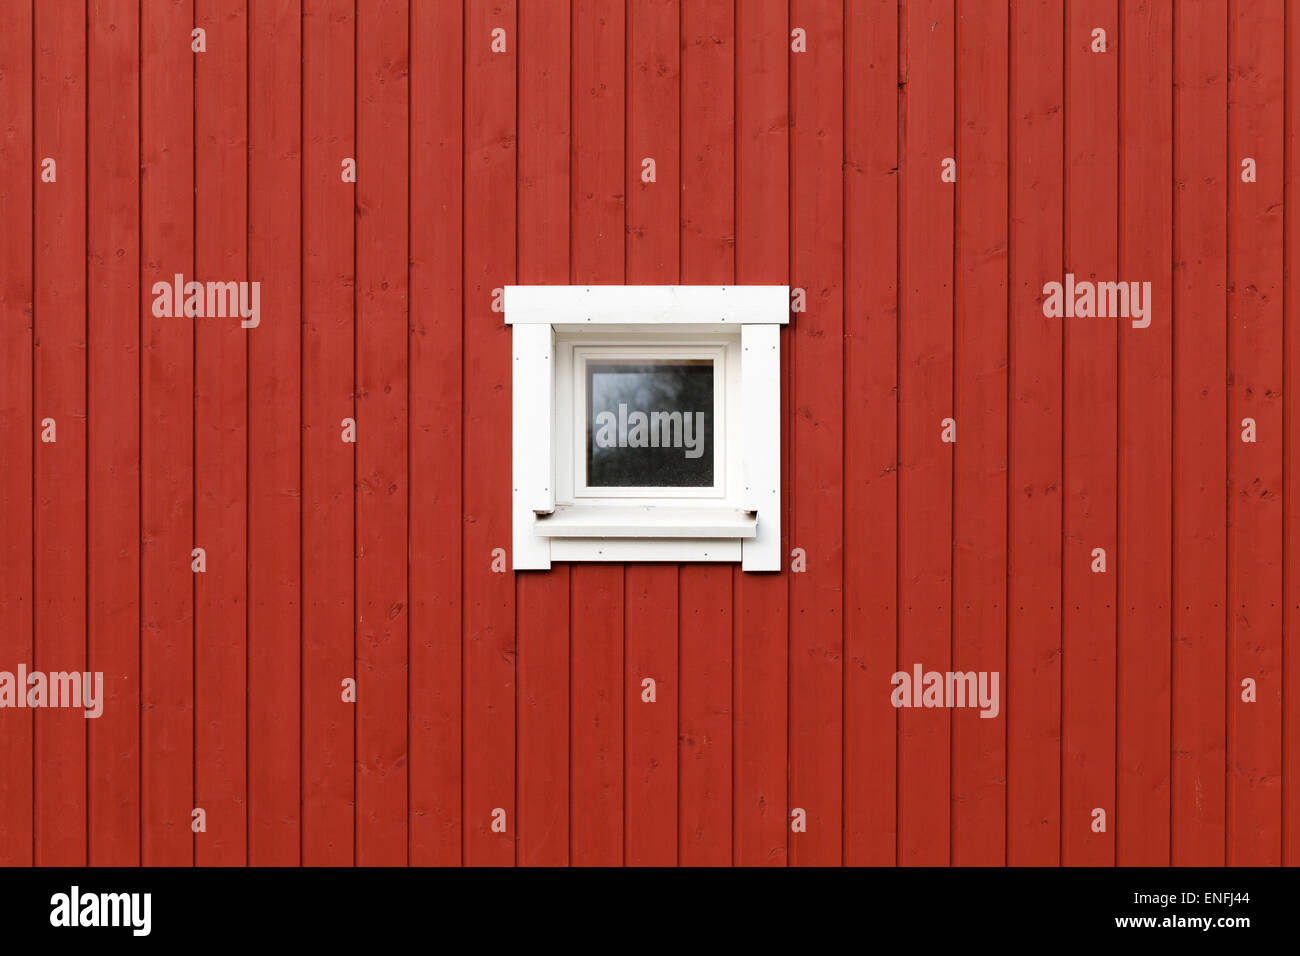 Rosso parete in legno con piccola finestra nella cornice bianca, tipicamente Scandinavo vivente casa frammento di architettura Foto Stock